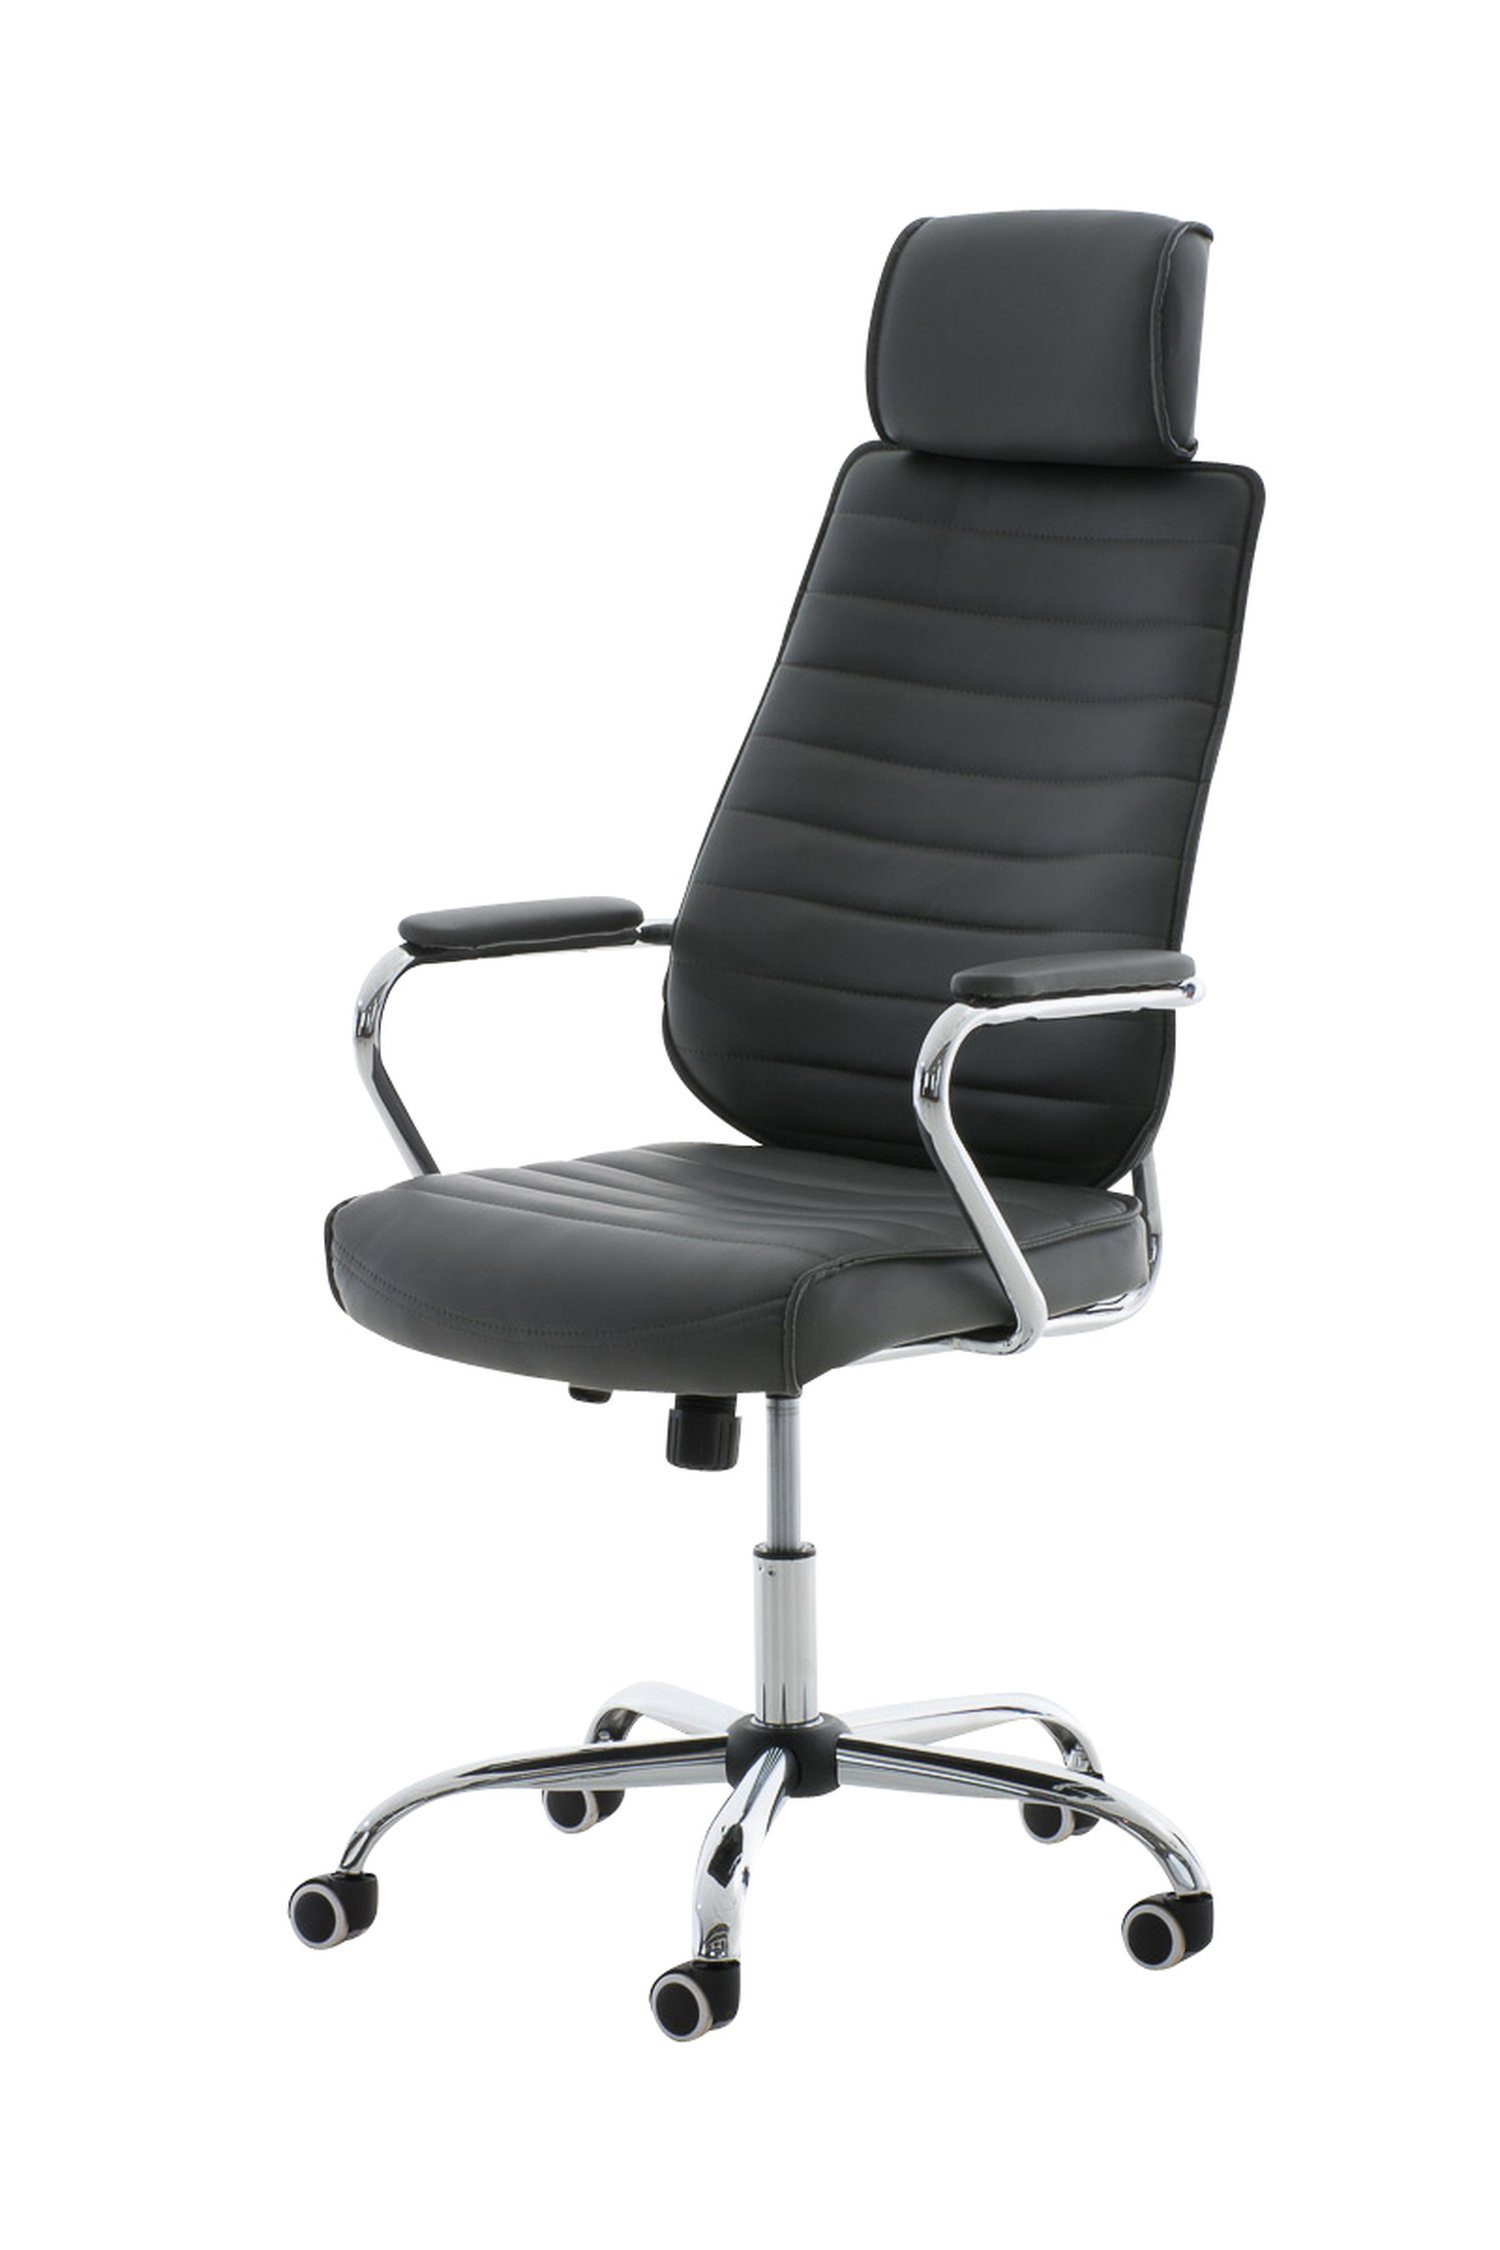 TPFLiving Bürostuhl Rocket V2 mit bequemer Rückenlehne - höhenverstellbar und 360° drehbar (Schreibtischstuhl, Drehstuhl, Chefsessel, Bürostuhl XXL), Gestell: Metall chrom - Sitz: Kunstleder grau